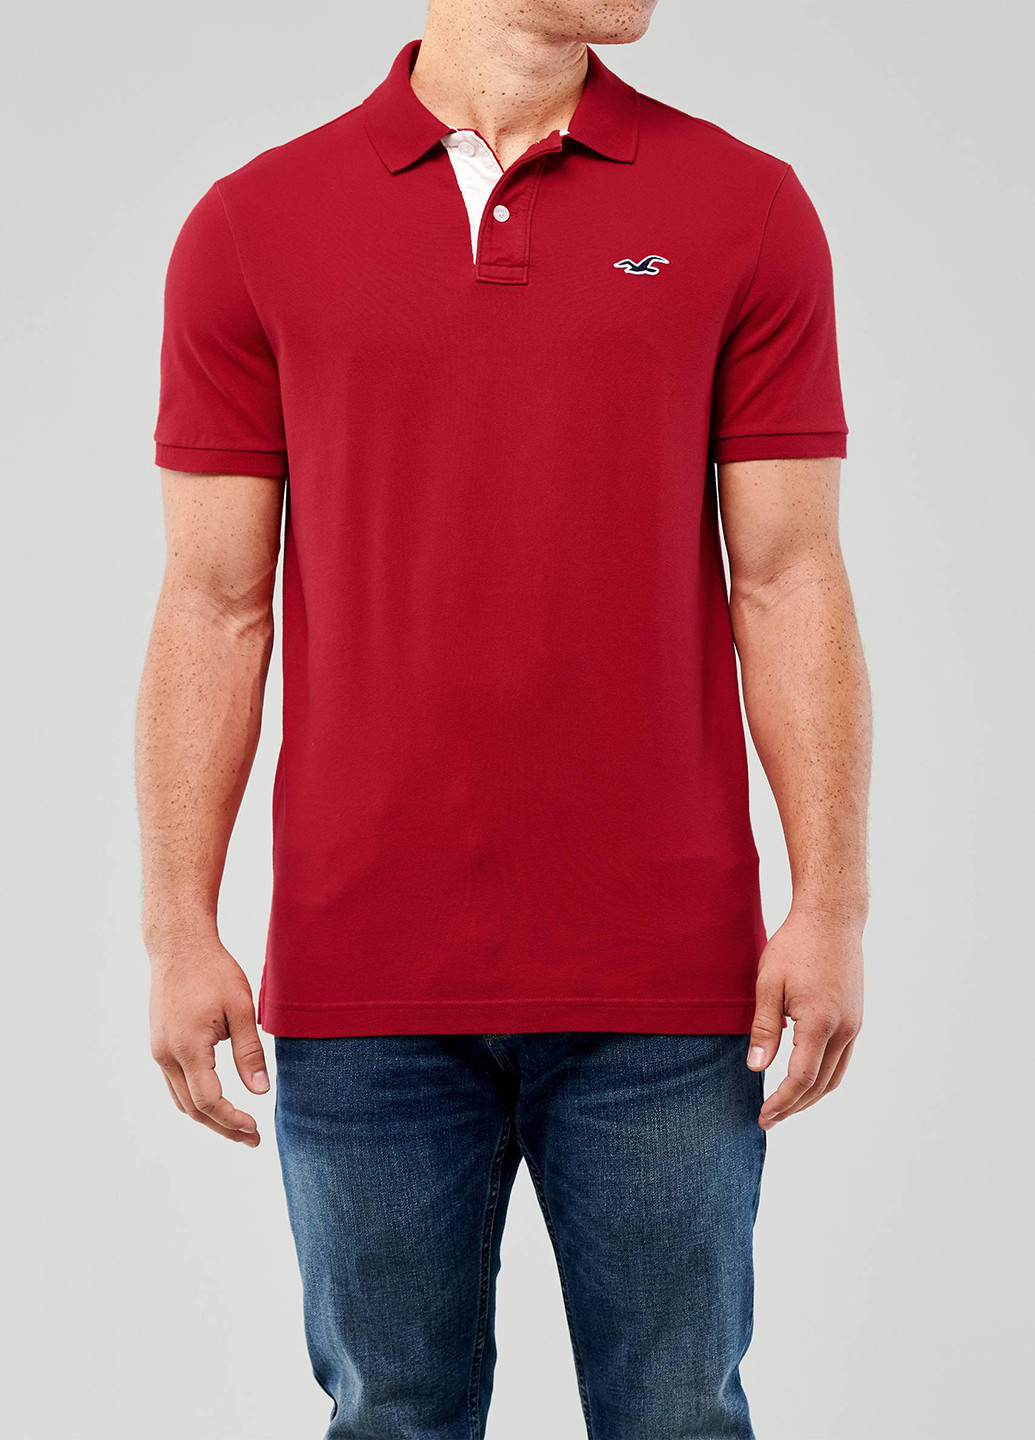 Красная футболка-поло для мужчин Hollister однотонная